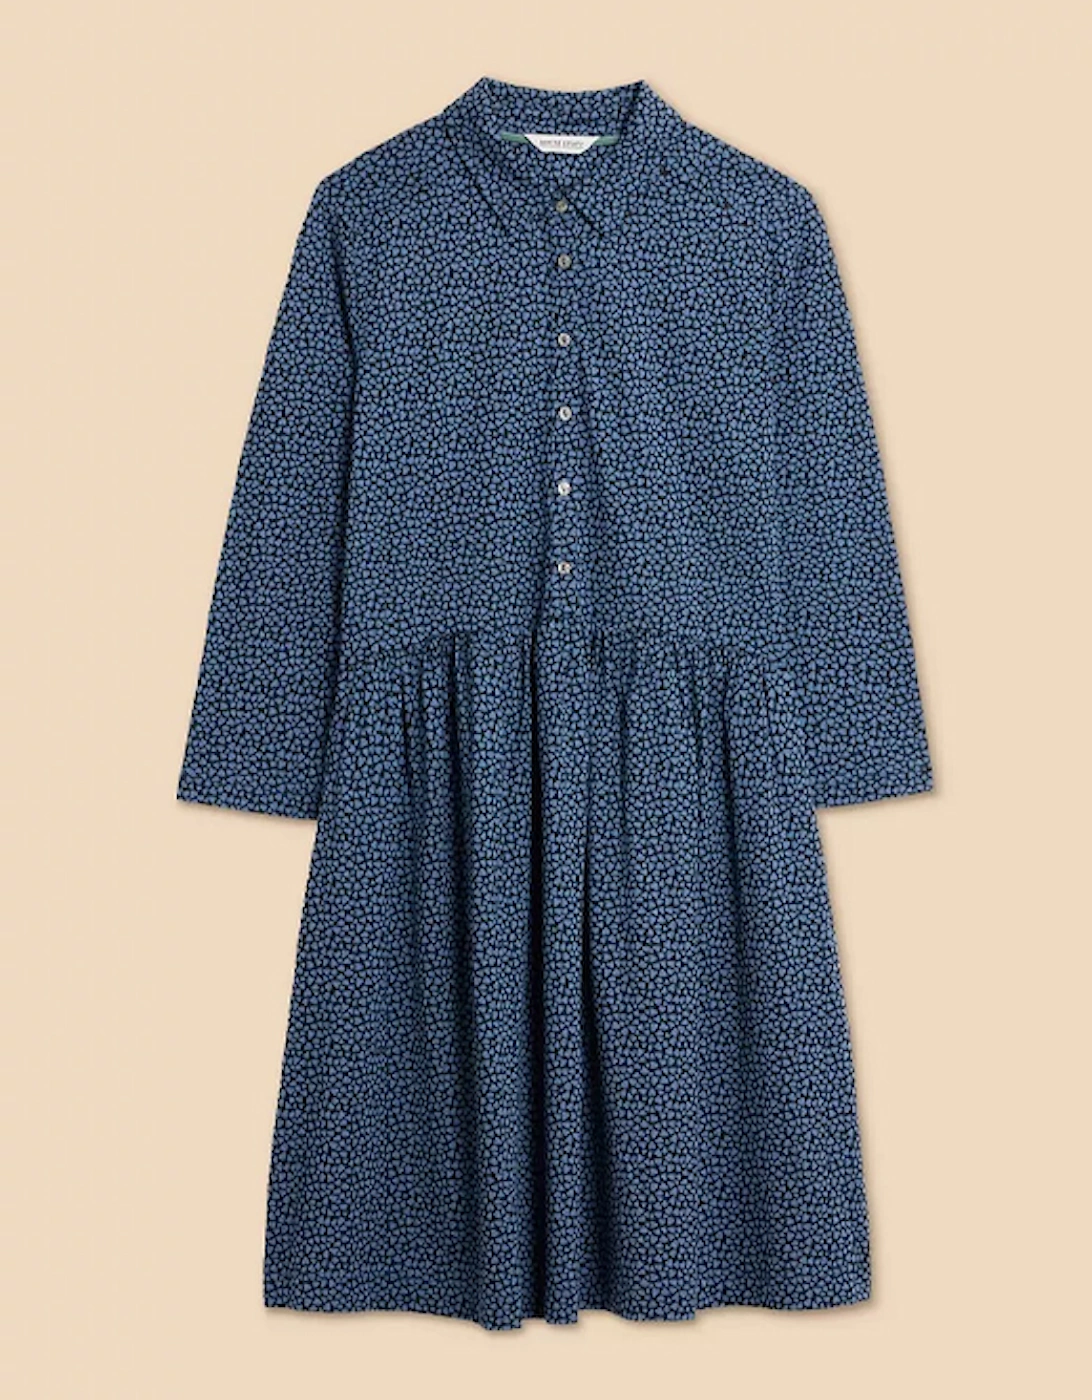 Petite Women's Everly Jersey Shirt Dress Blue Print